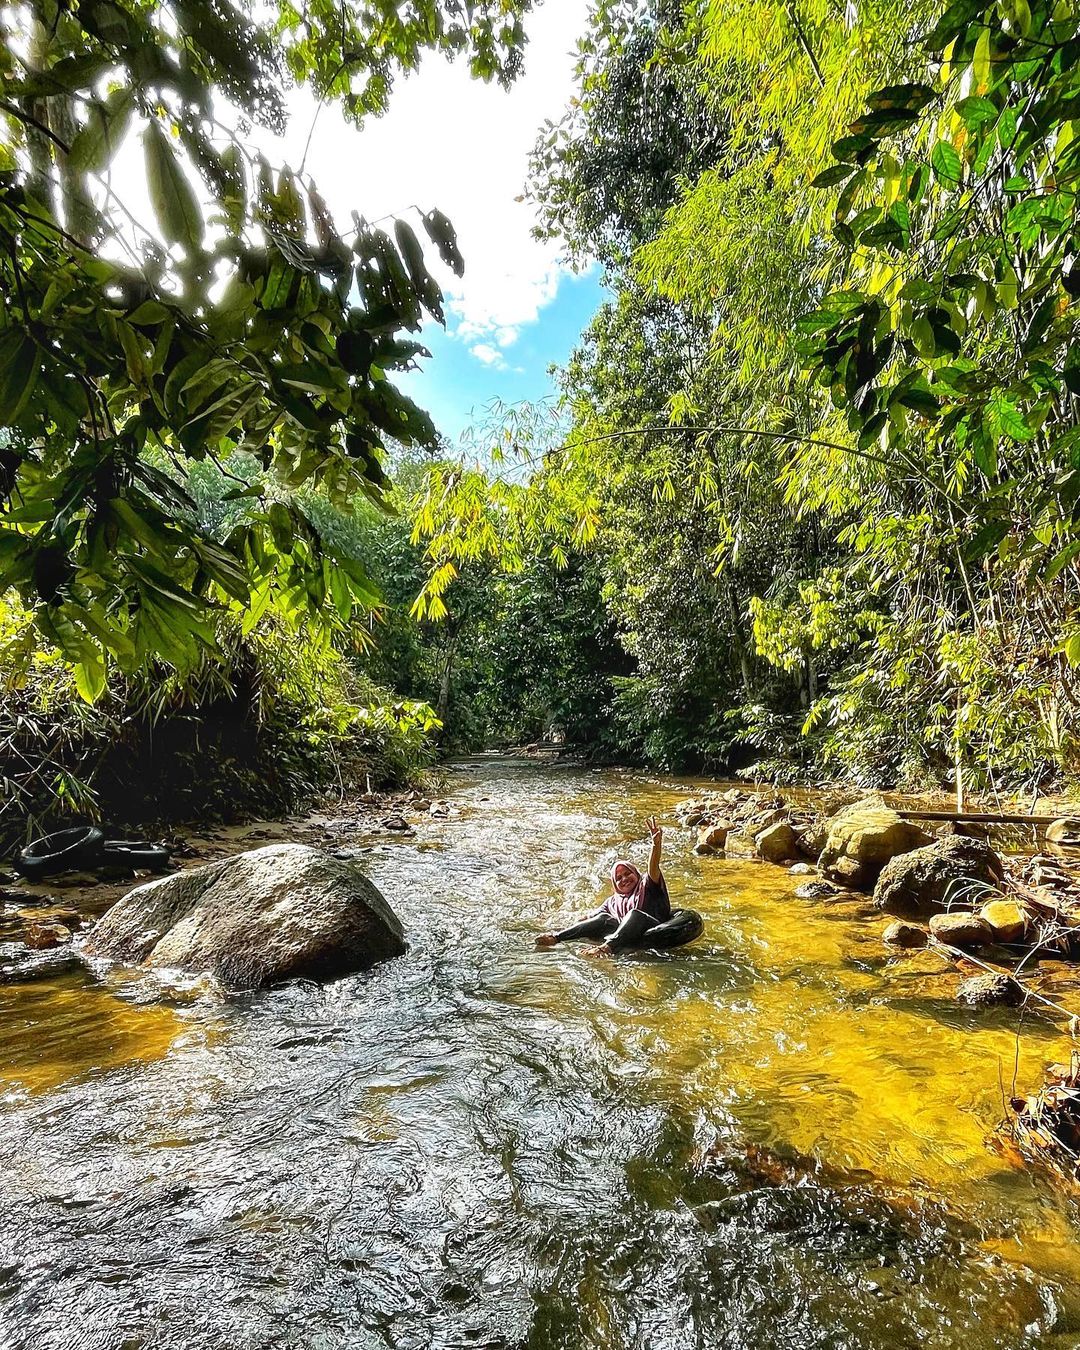 Glamping Malaysia - Dusun river